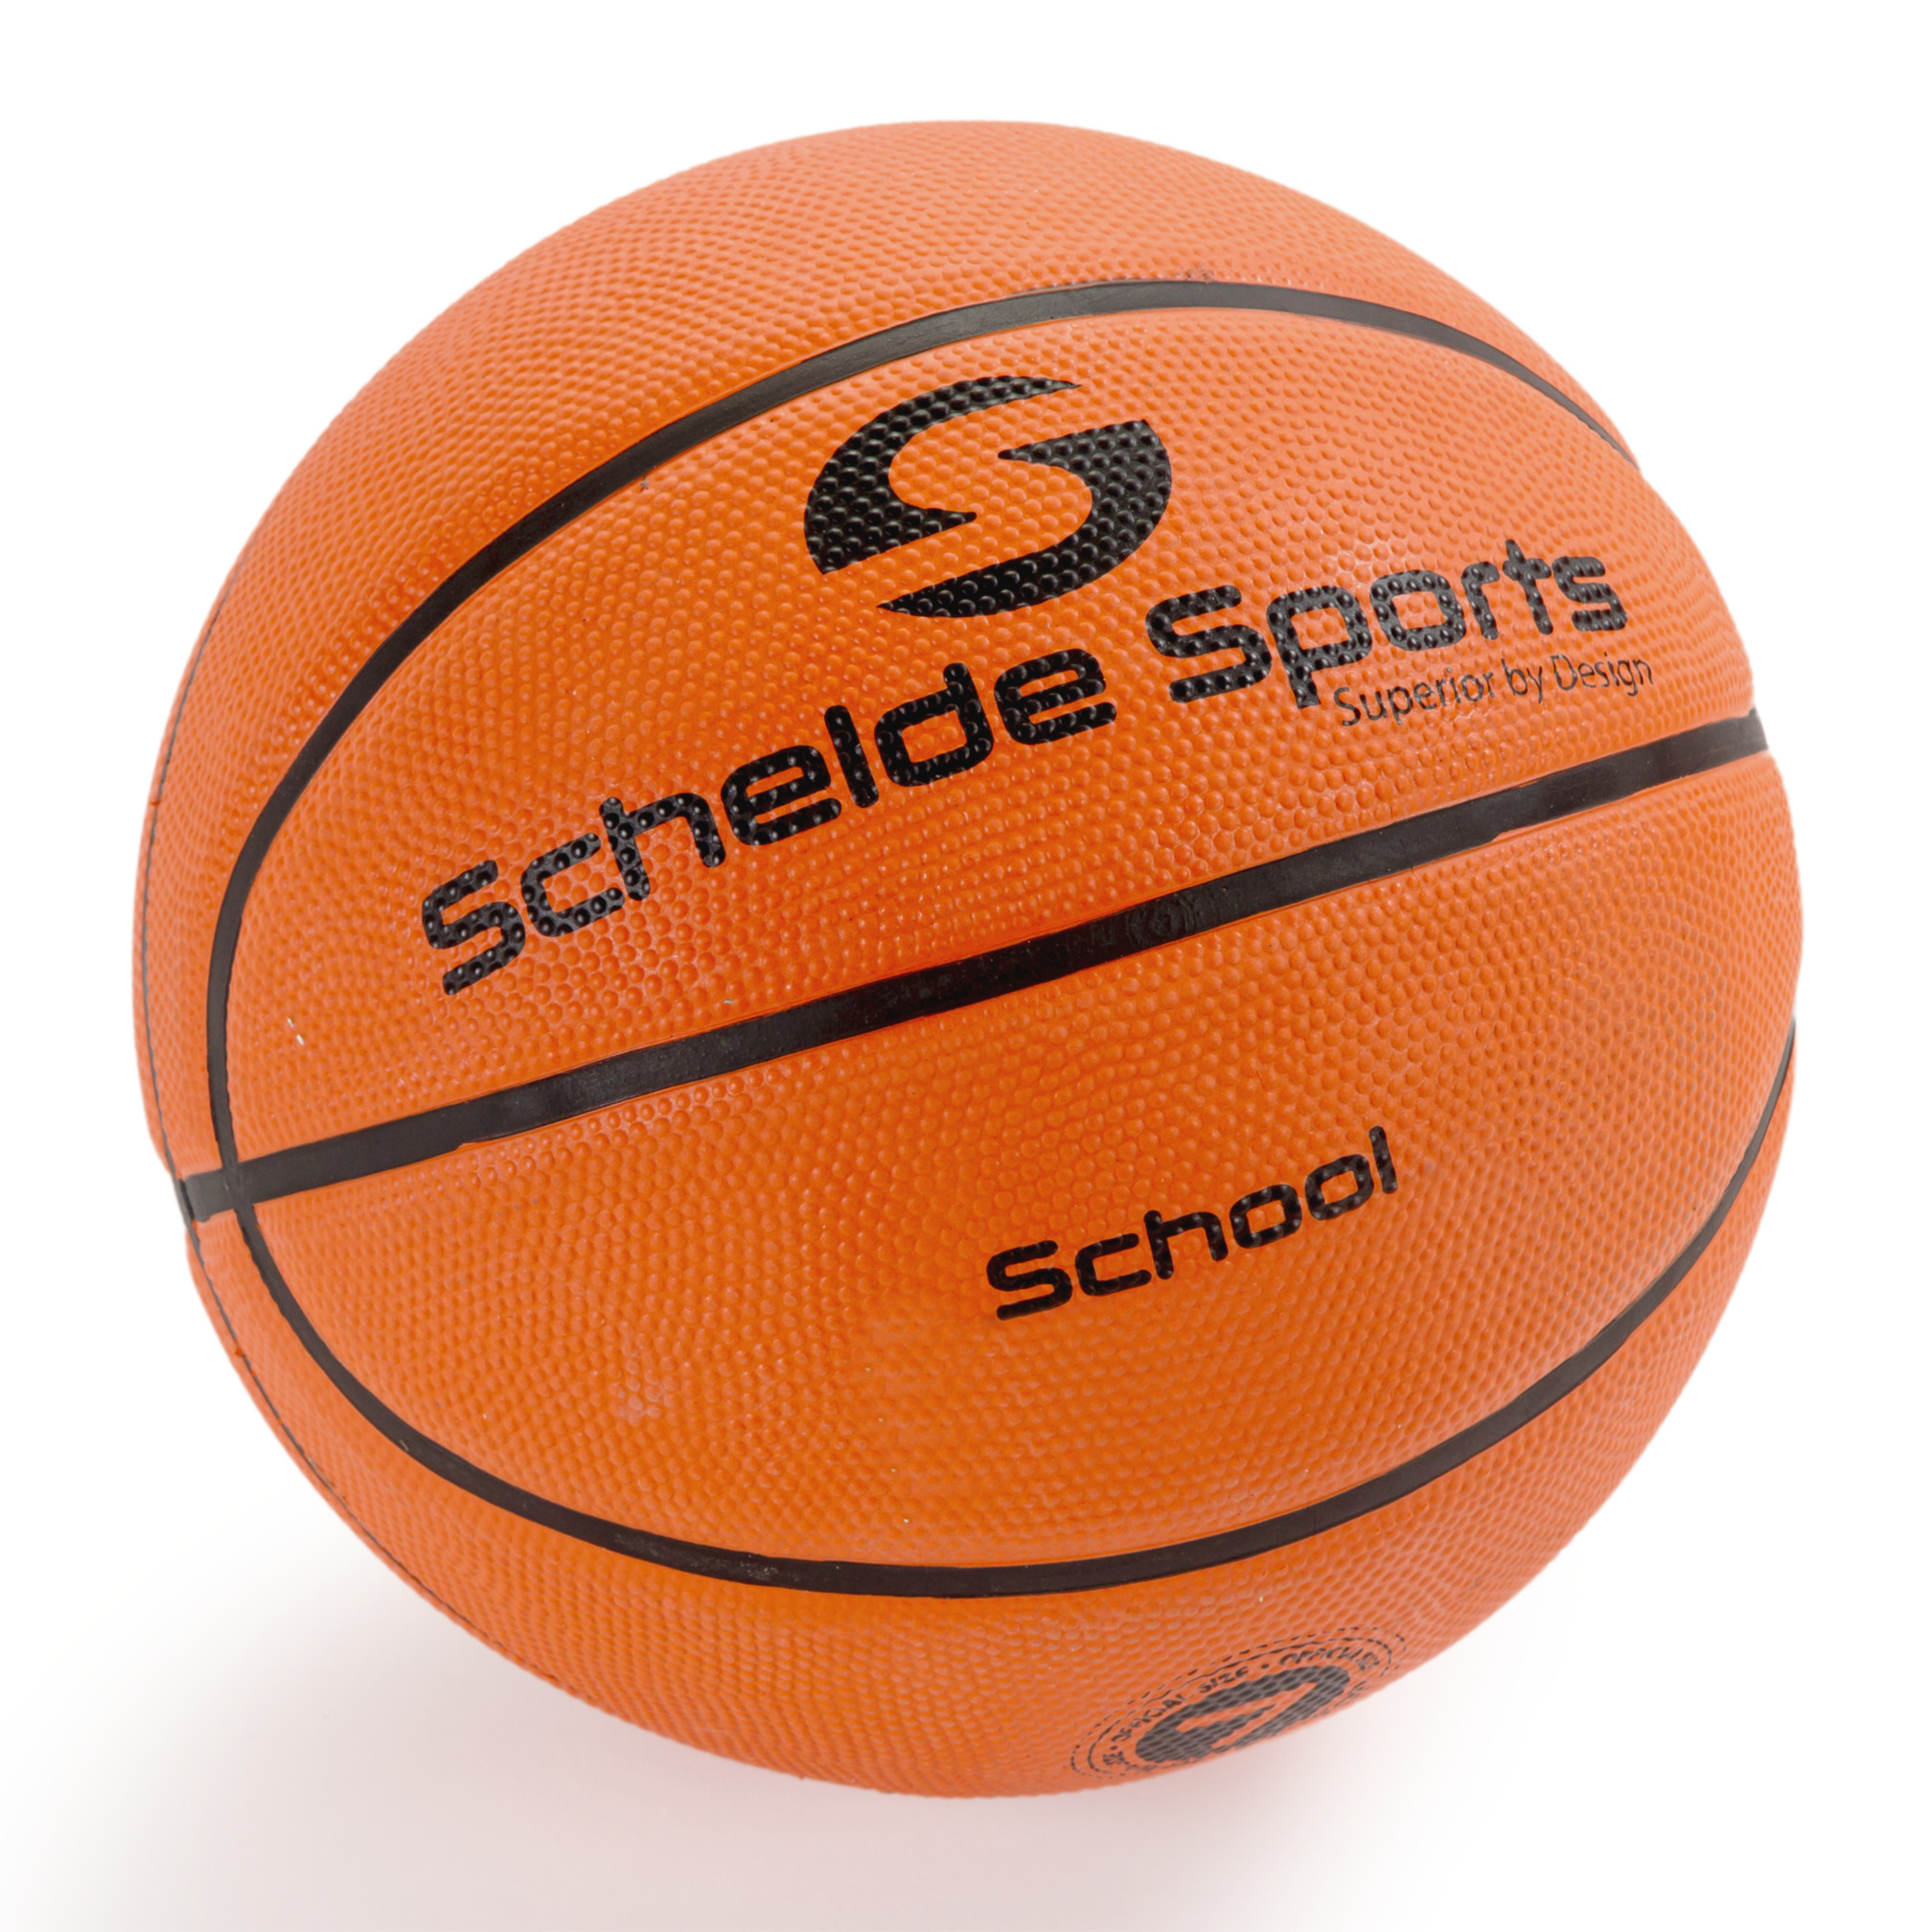 Schelde Sports Basketball School, size 7